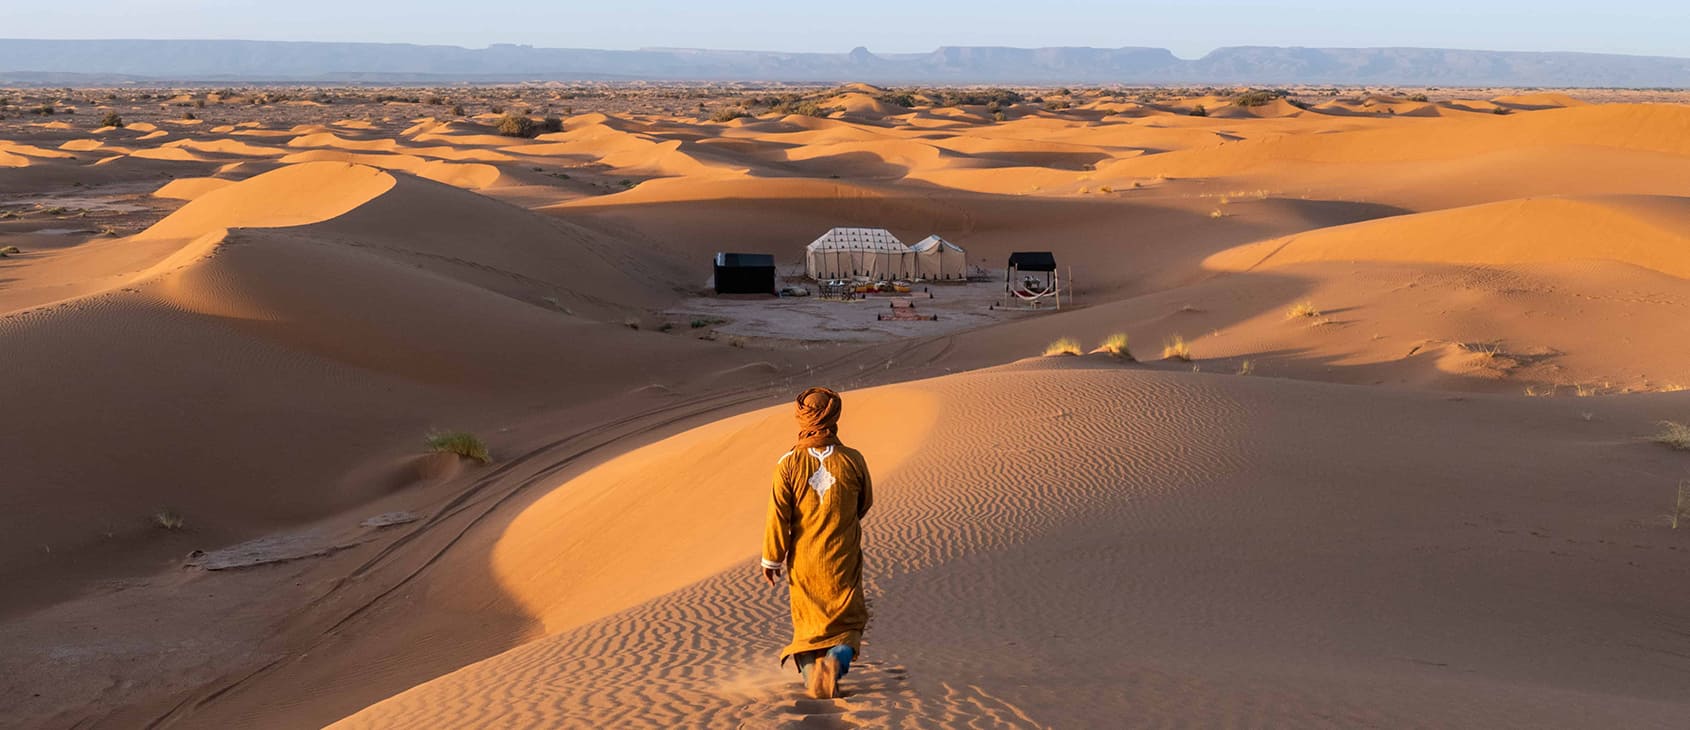 Erg Chigaga Luxury Desert Camp Morocco, Private Nomadic Camp